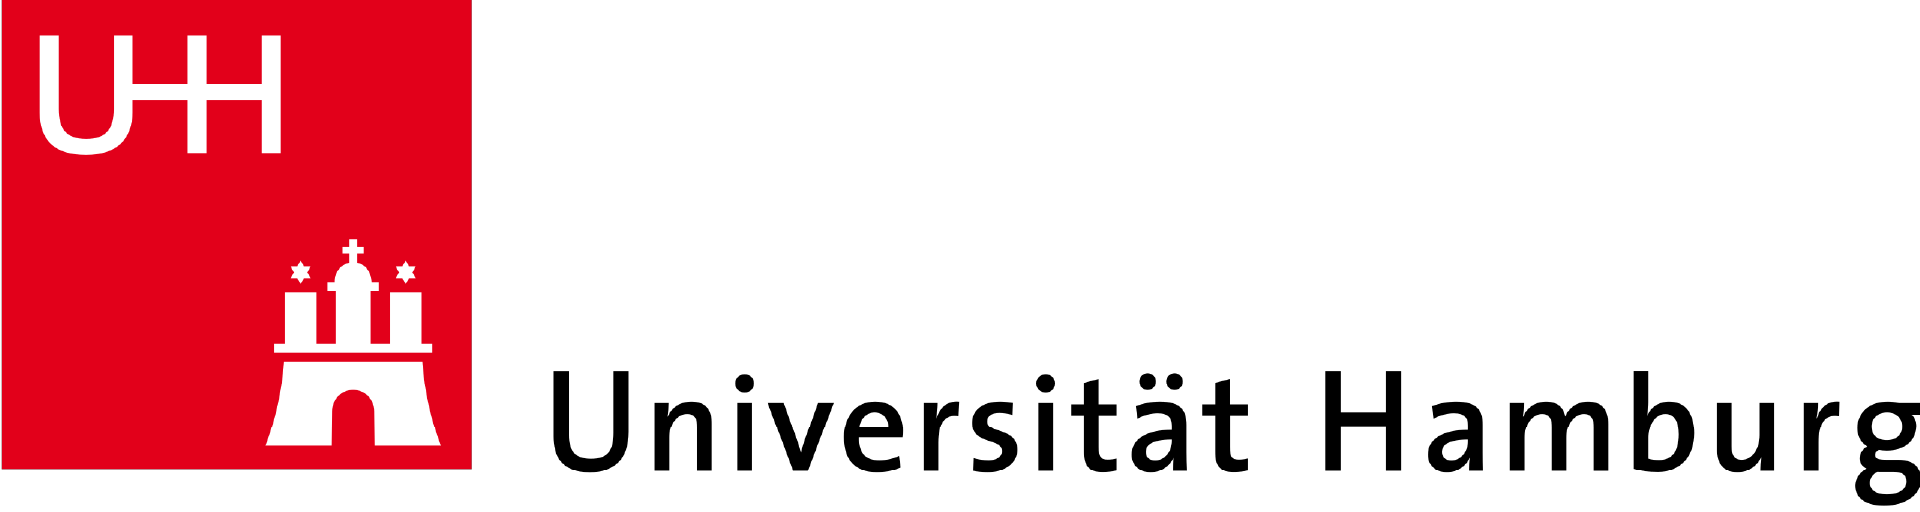 Univeritat Hamburg